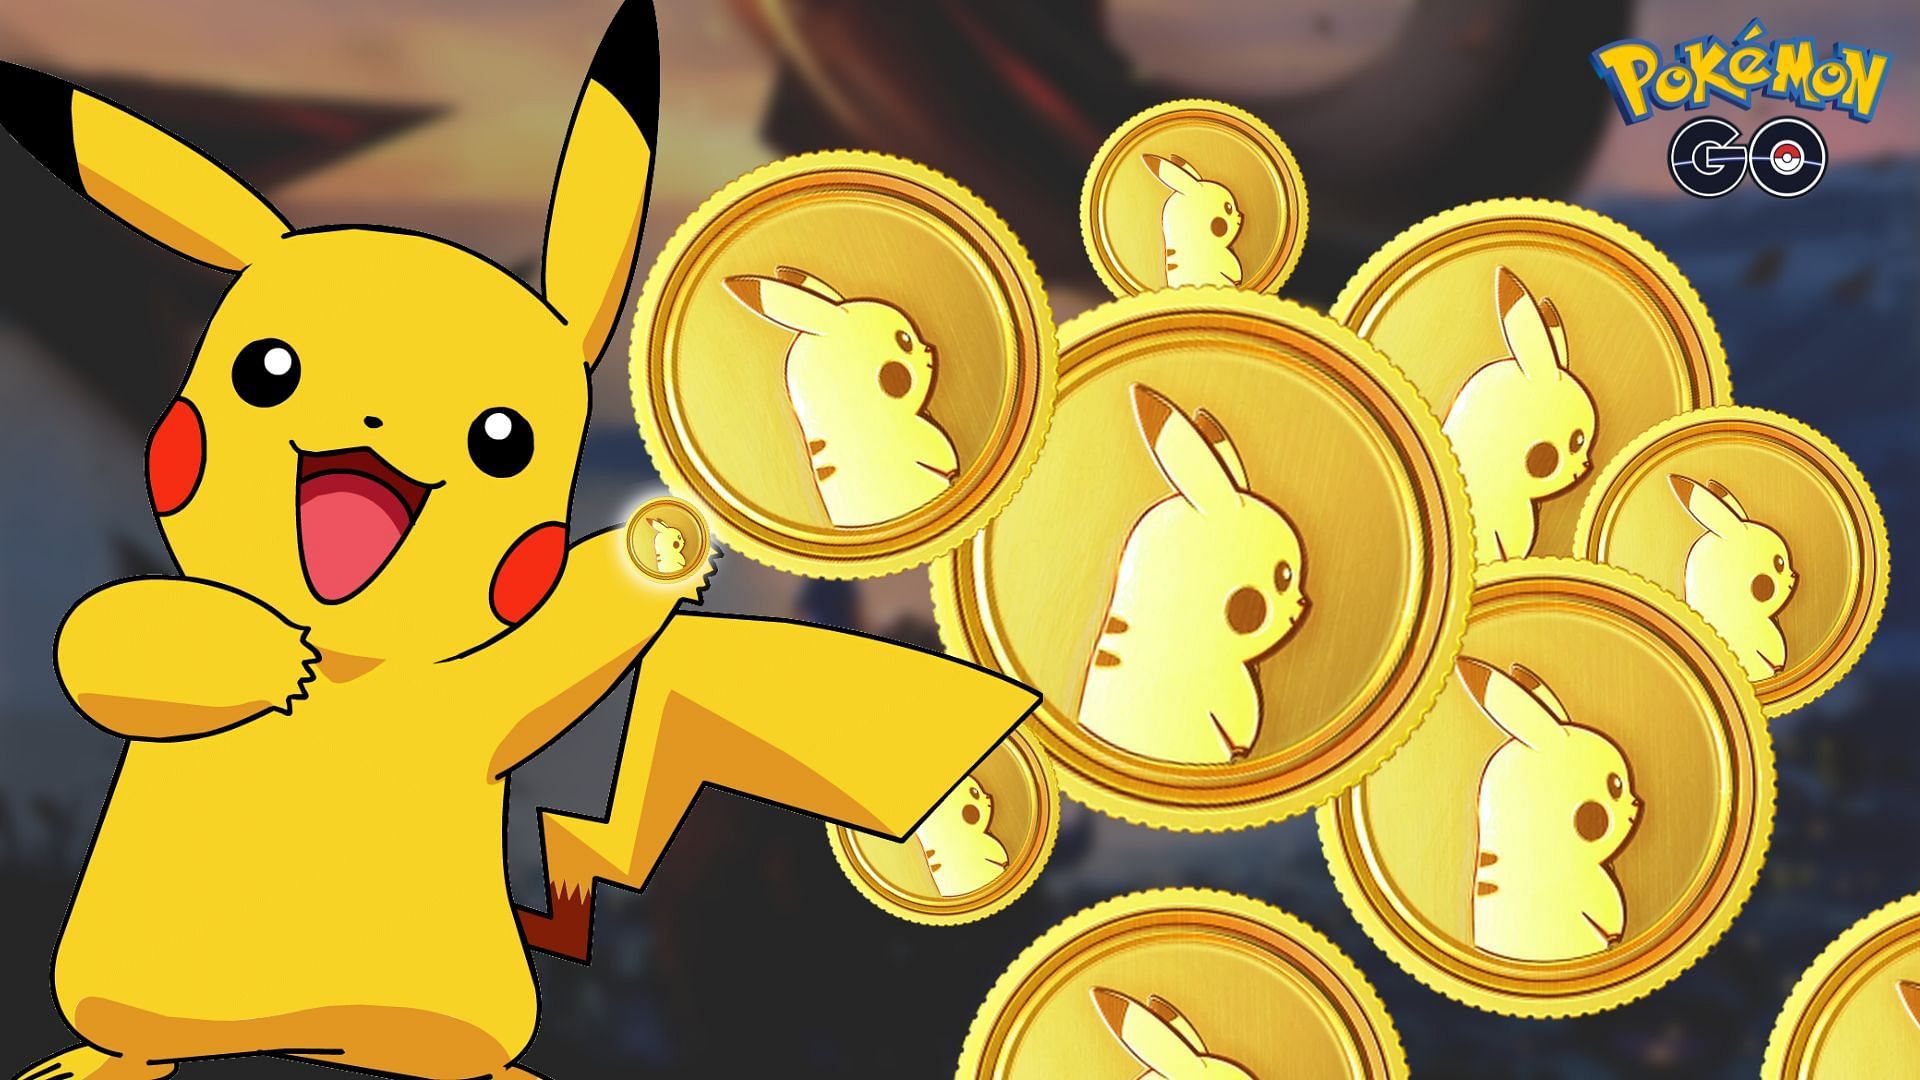 💯✨🕵👀 ENGEL GO 🚨📱 💯✨ on X: 📌💸 It's very cheap to buy PokeCoins in Pokémon  GO from Turkey 🇹🇷 (VPN) #PokemonGO  / X